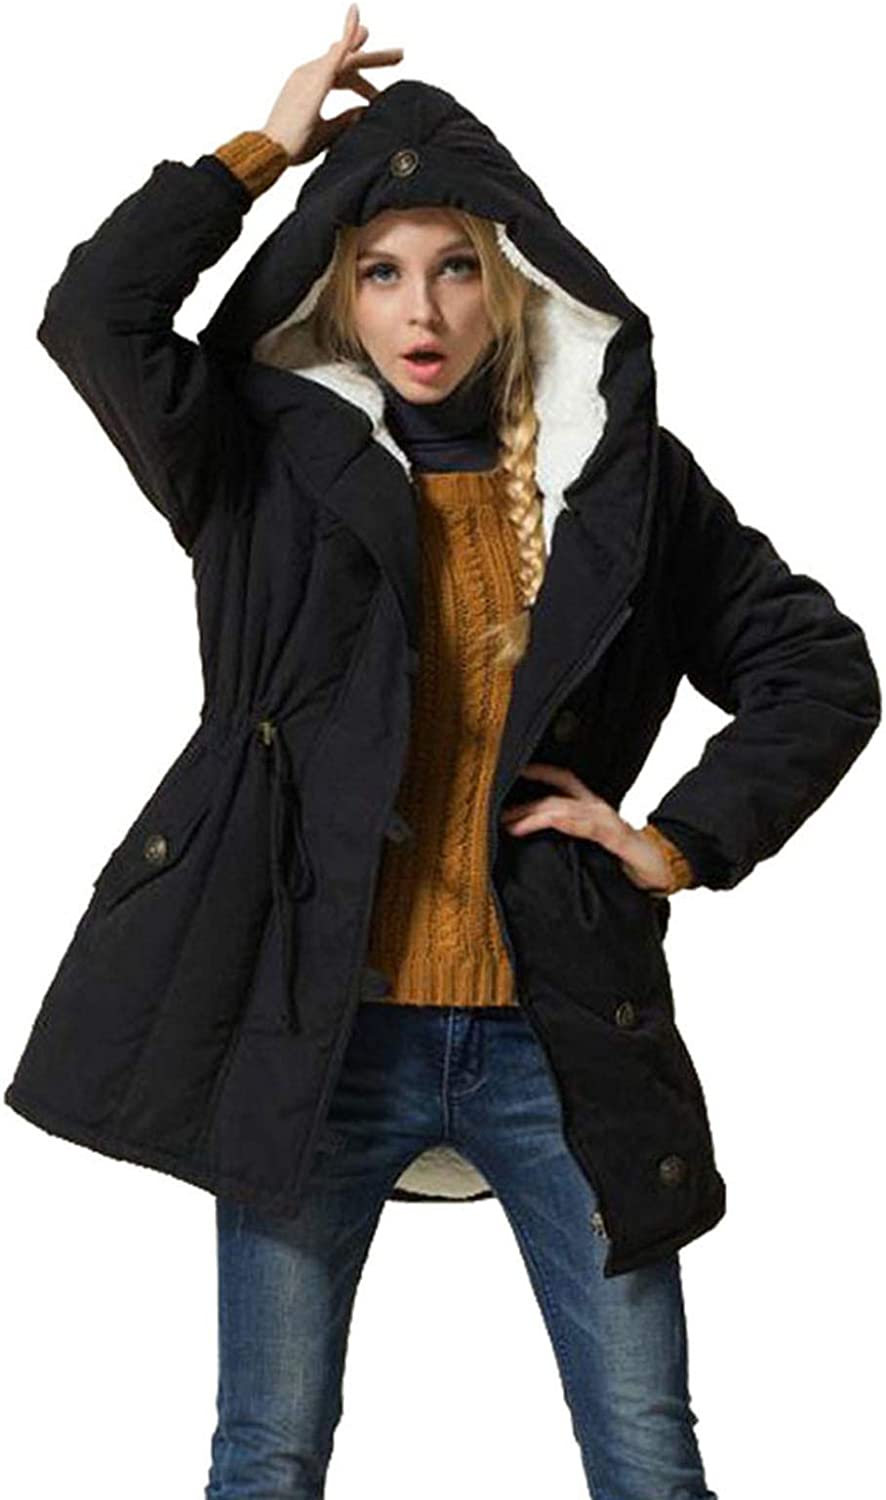 Eleter Women's Winter Warm Coat Hoodie Parkas Overcoat Fleece Outwear Jacket  wit | eBay